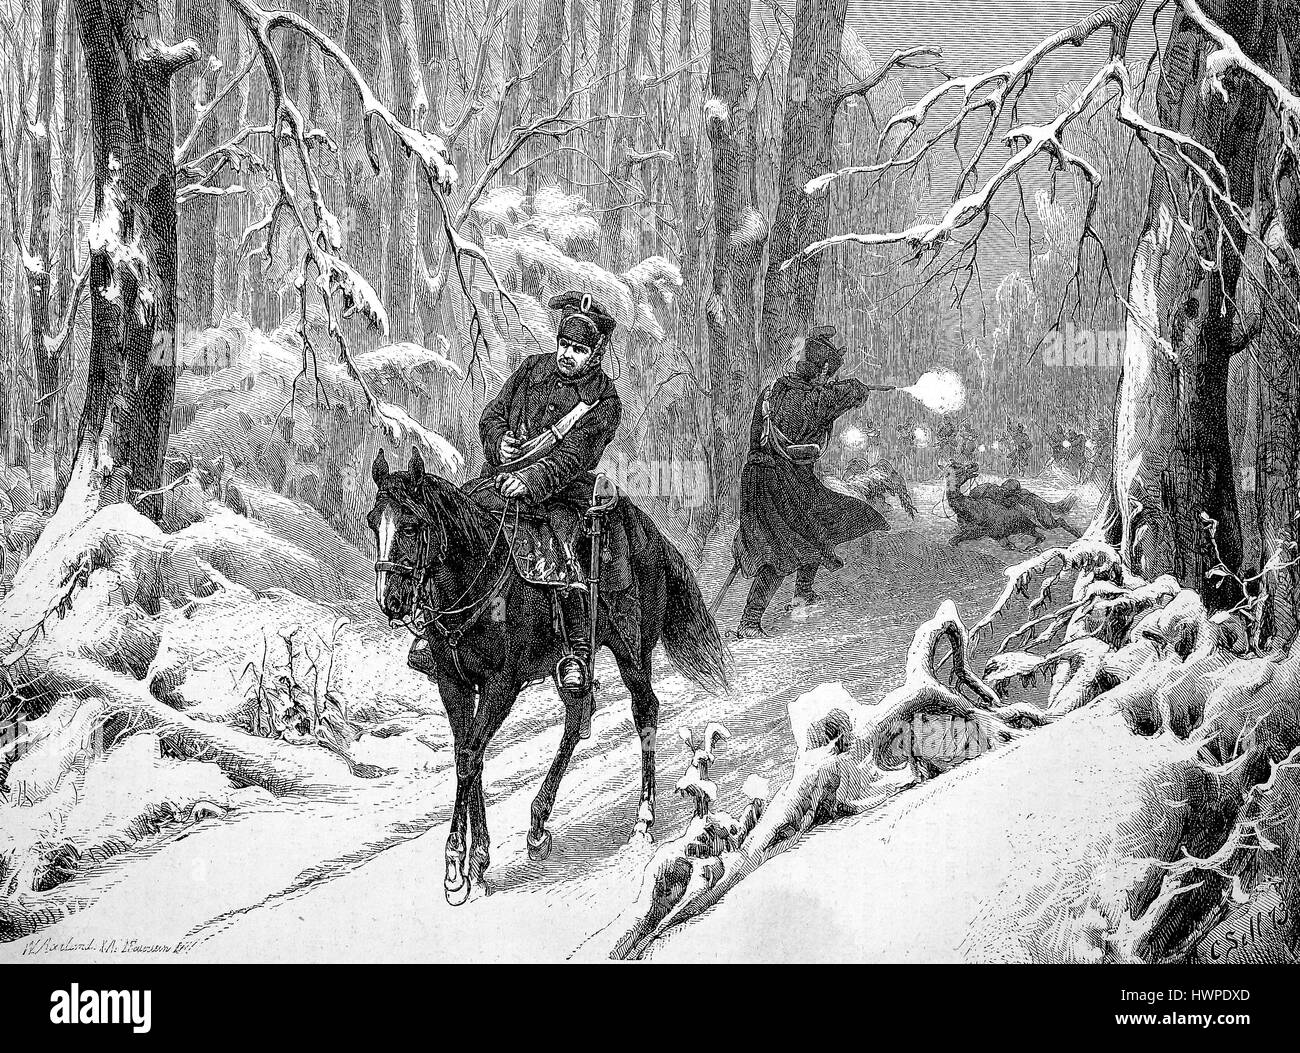 Scena dalla campagna invernale del 1870, soldato su un cavallo in legno snowcovered, riproduzione di un originale xilografia a partire dall'anno 1882, digitale migliorata Foto Stock